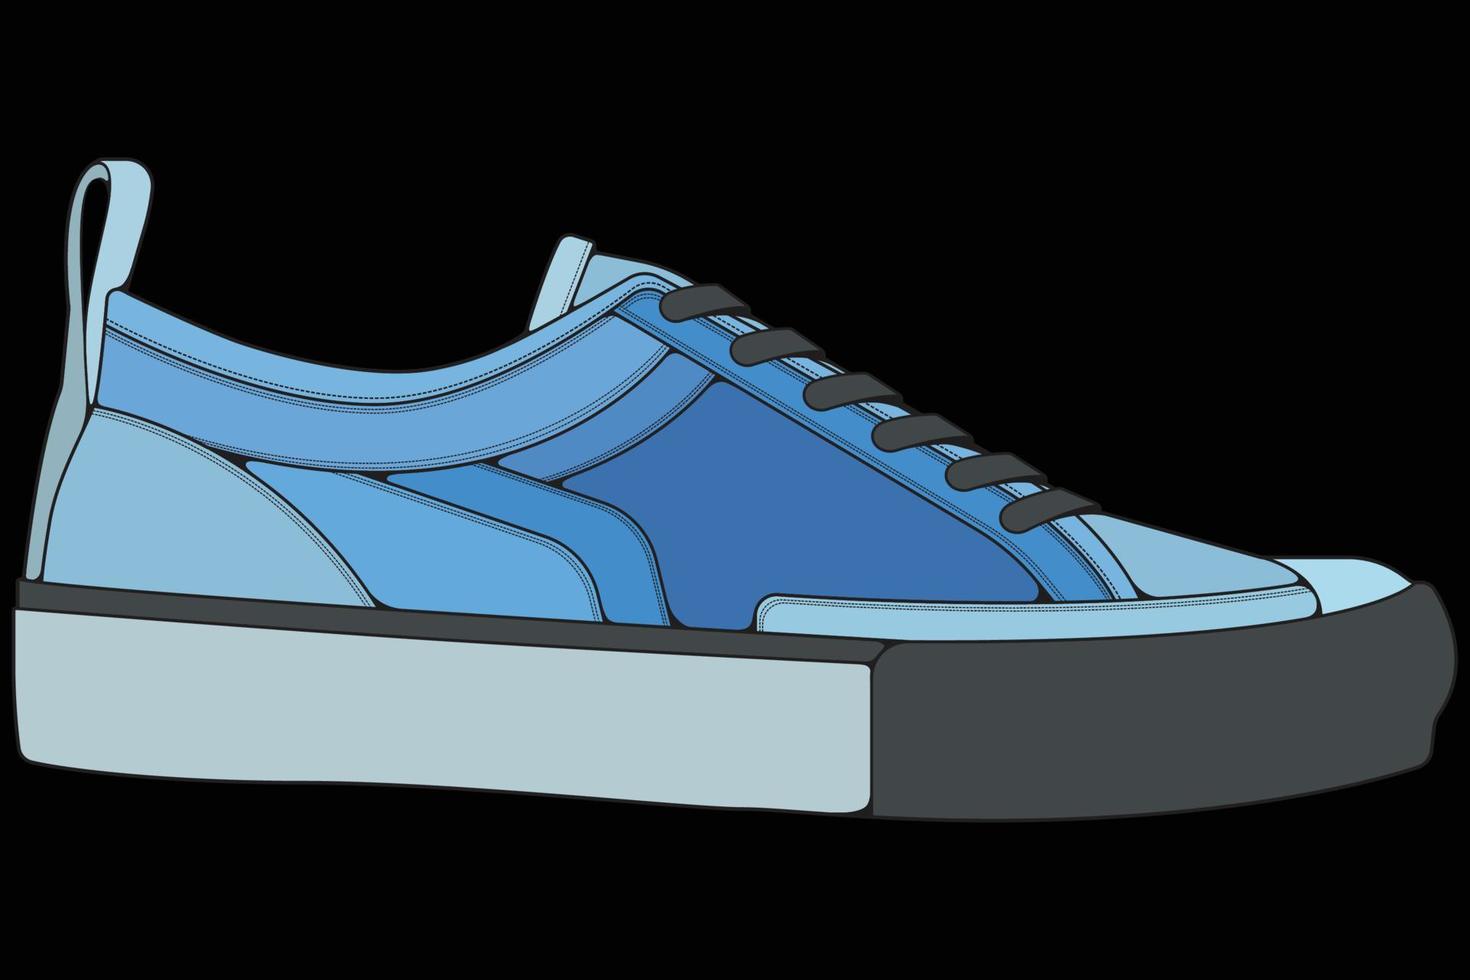 scarpe da ginnastica vettoriali per l'allenamento, illustrazione vettoriale di scarpe da corsa. scarpe sportive colore pieno.